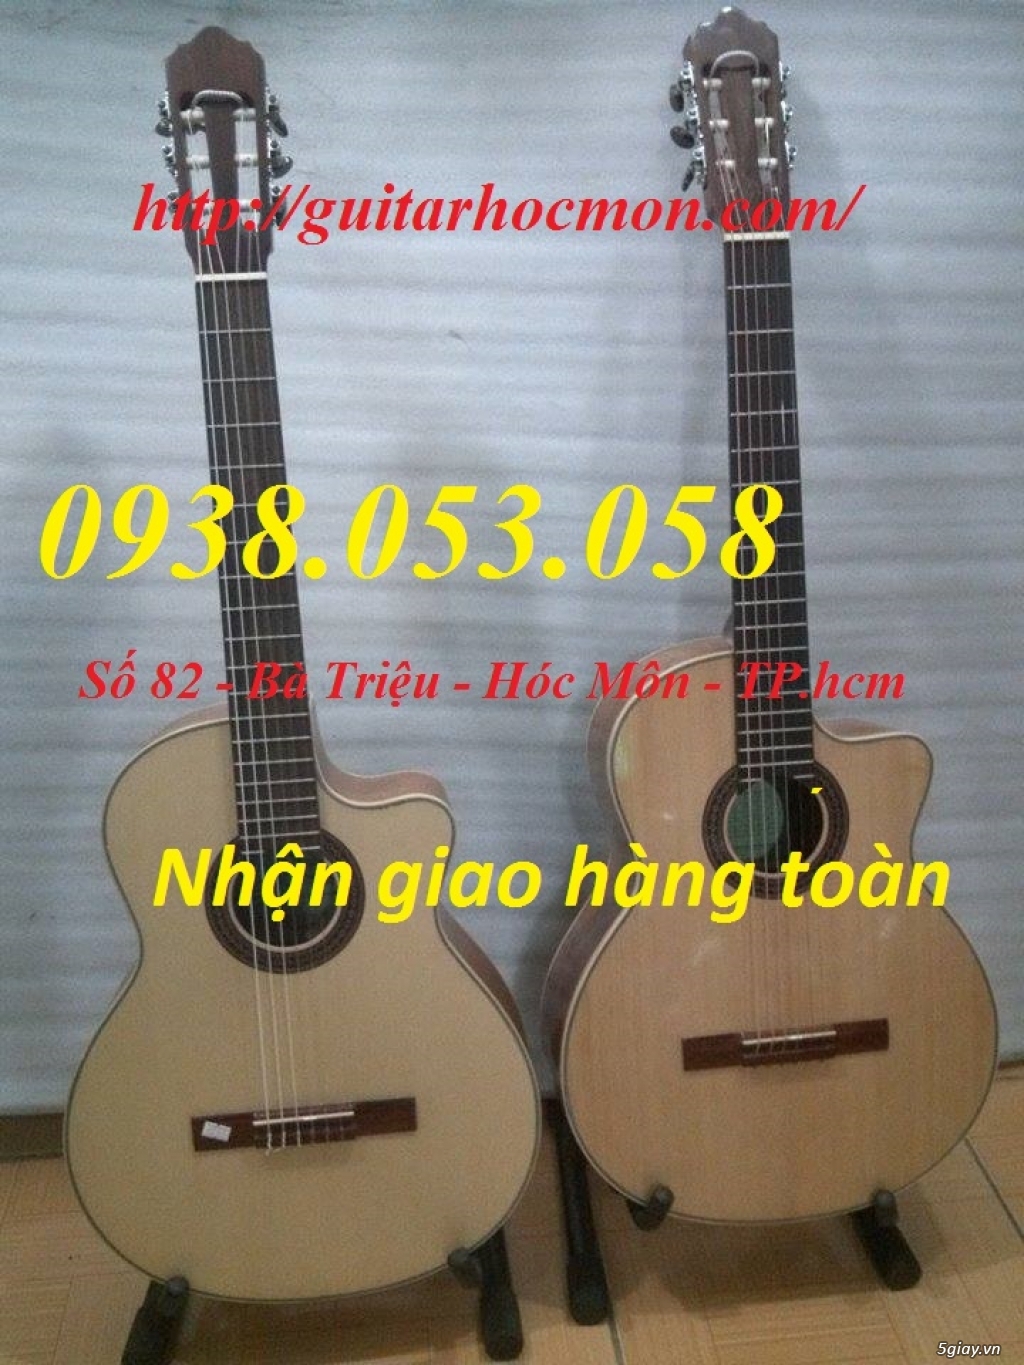 Bán Đàn Guitar, Đàn Tranh, giá rẻ tại cửa hàng nhạc cụ mới HÓC MÔN - 18